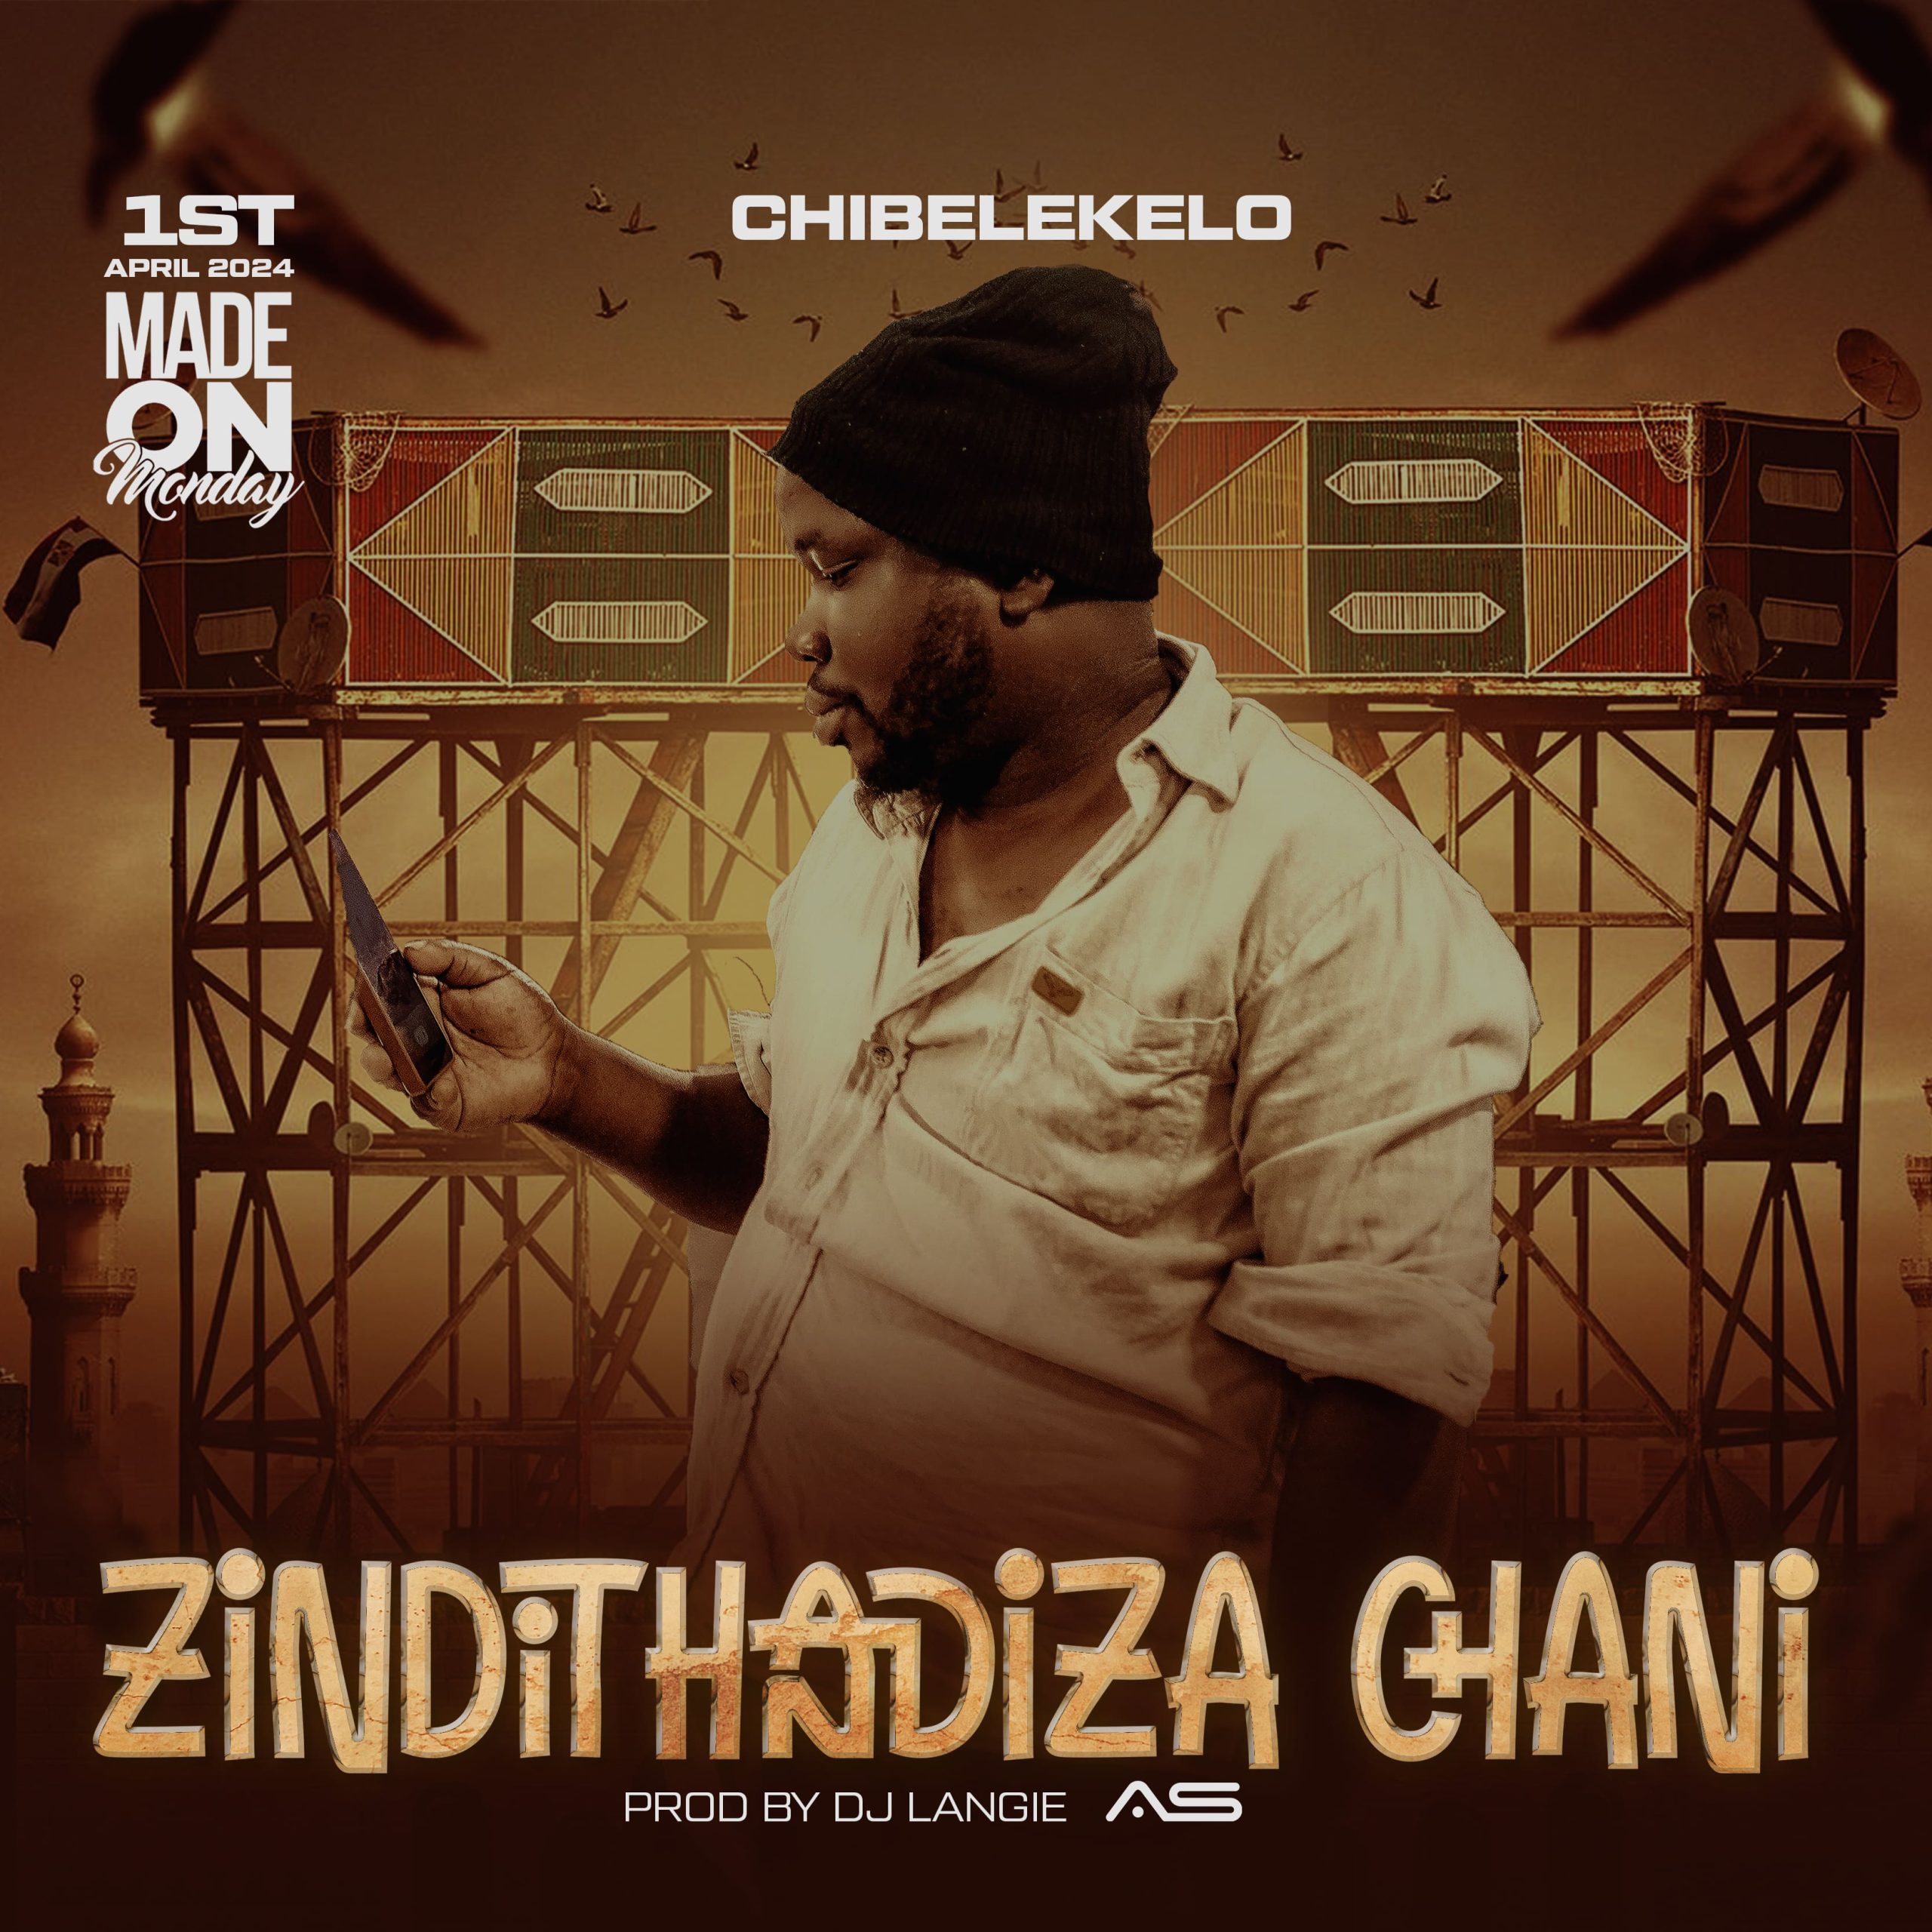 Chibelekelo-Zindithandiza-Chani-Prod-by-DJ-Langie